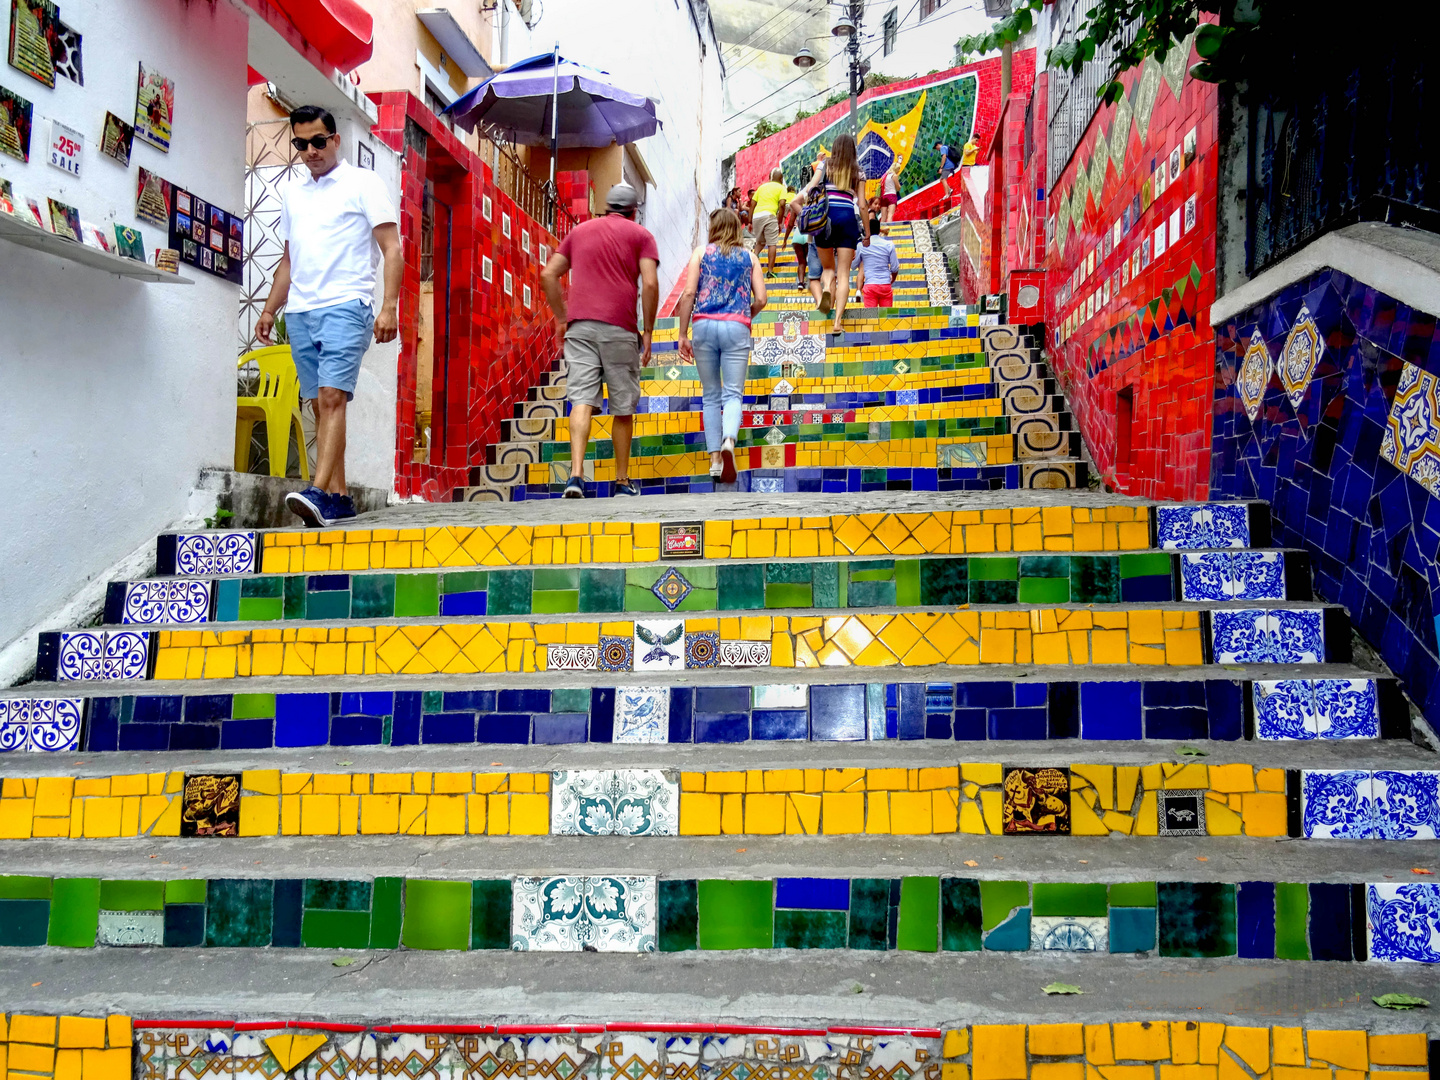 ESCADARIA SELARON STEPS, RIO DE JANEIRO, BRAZIL